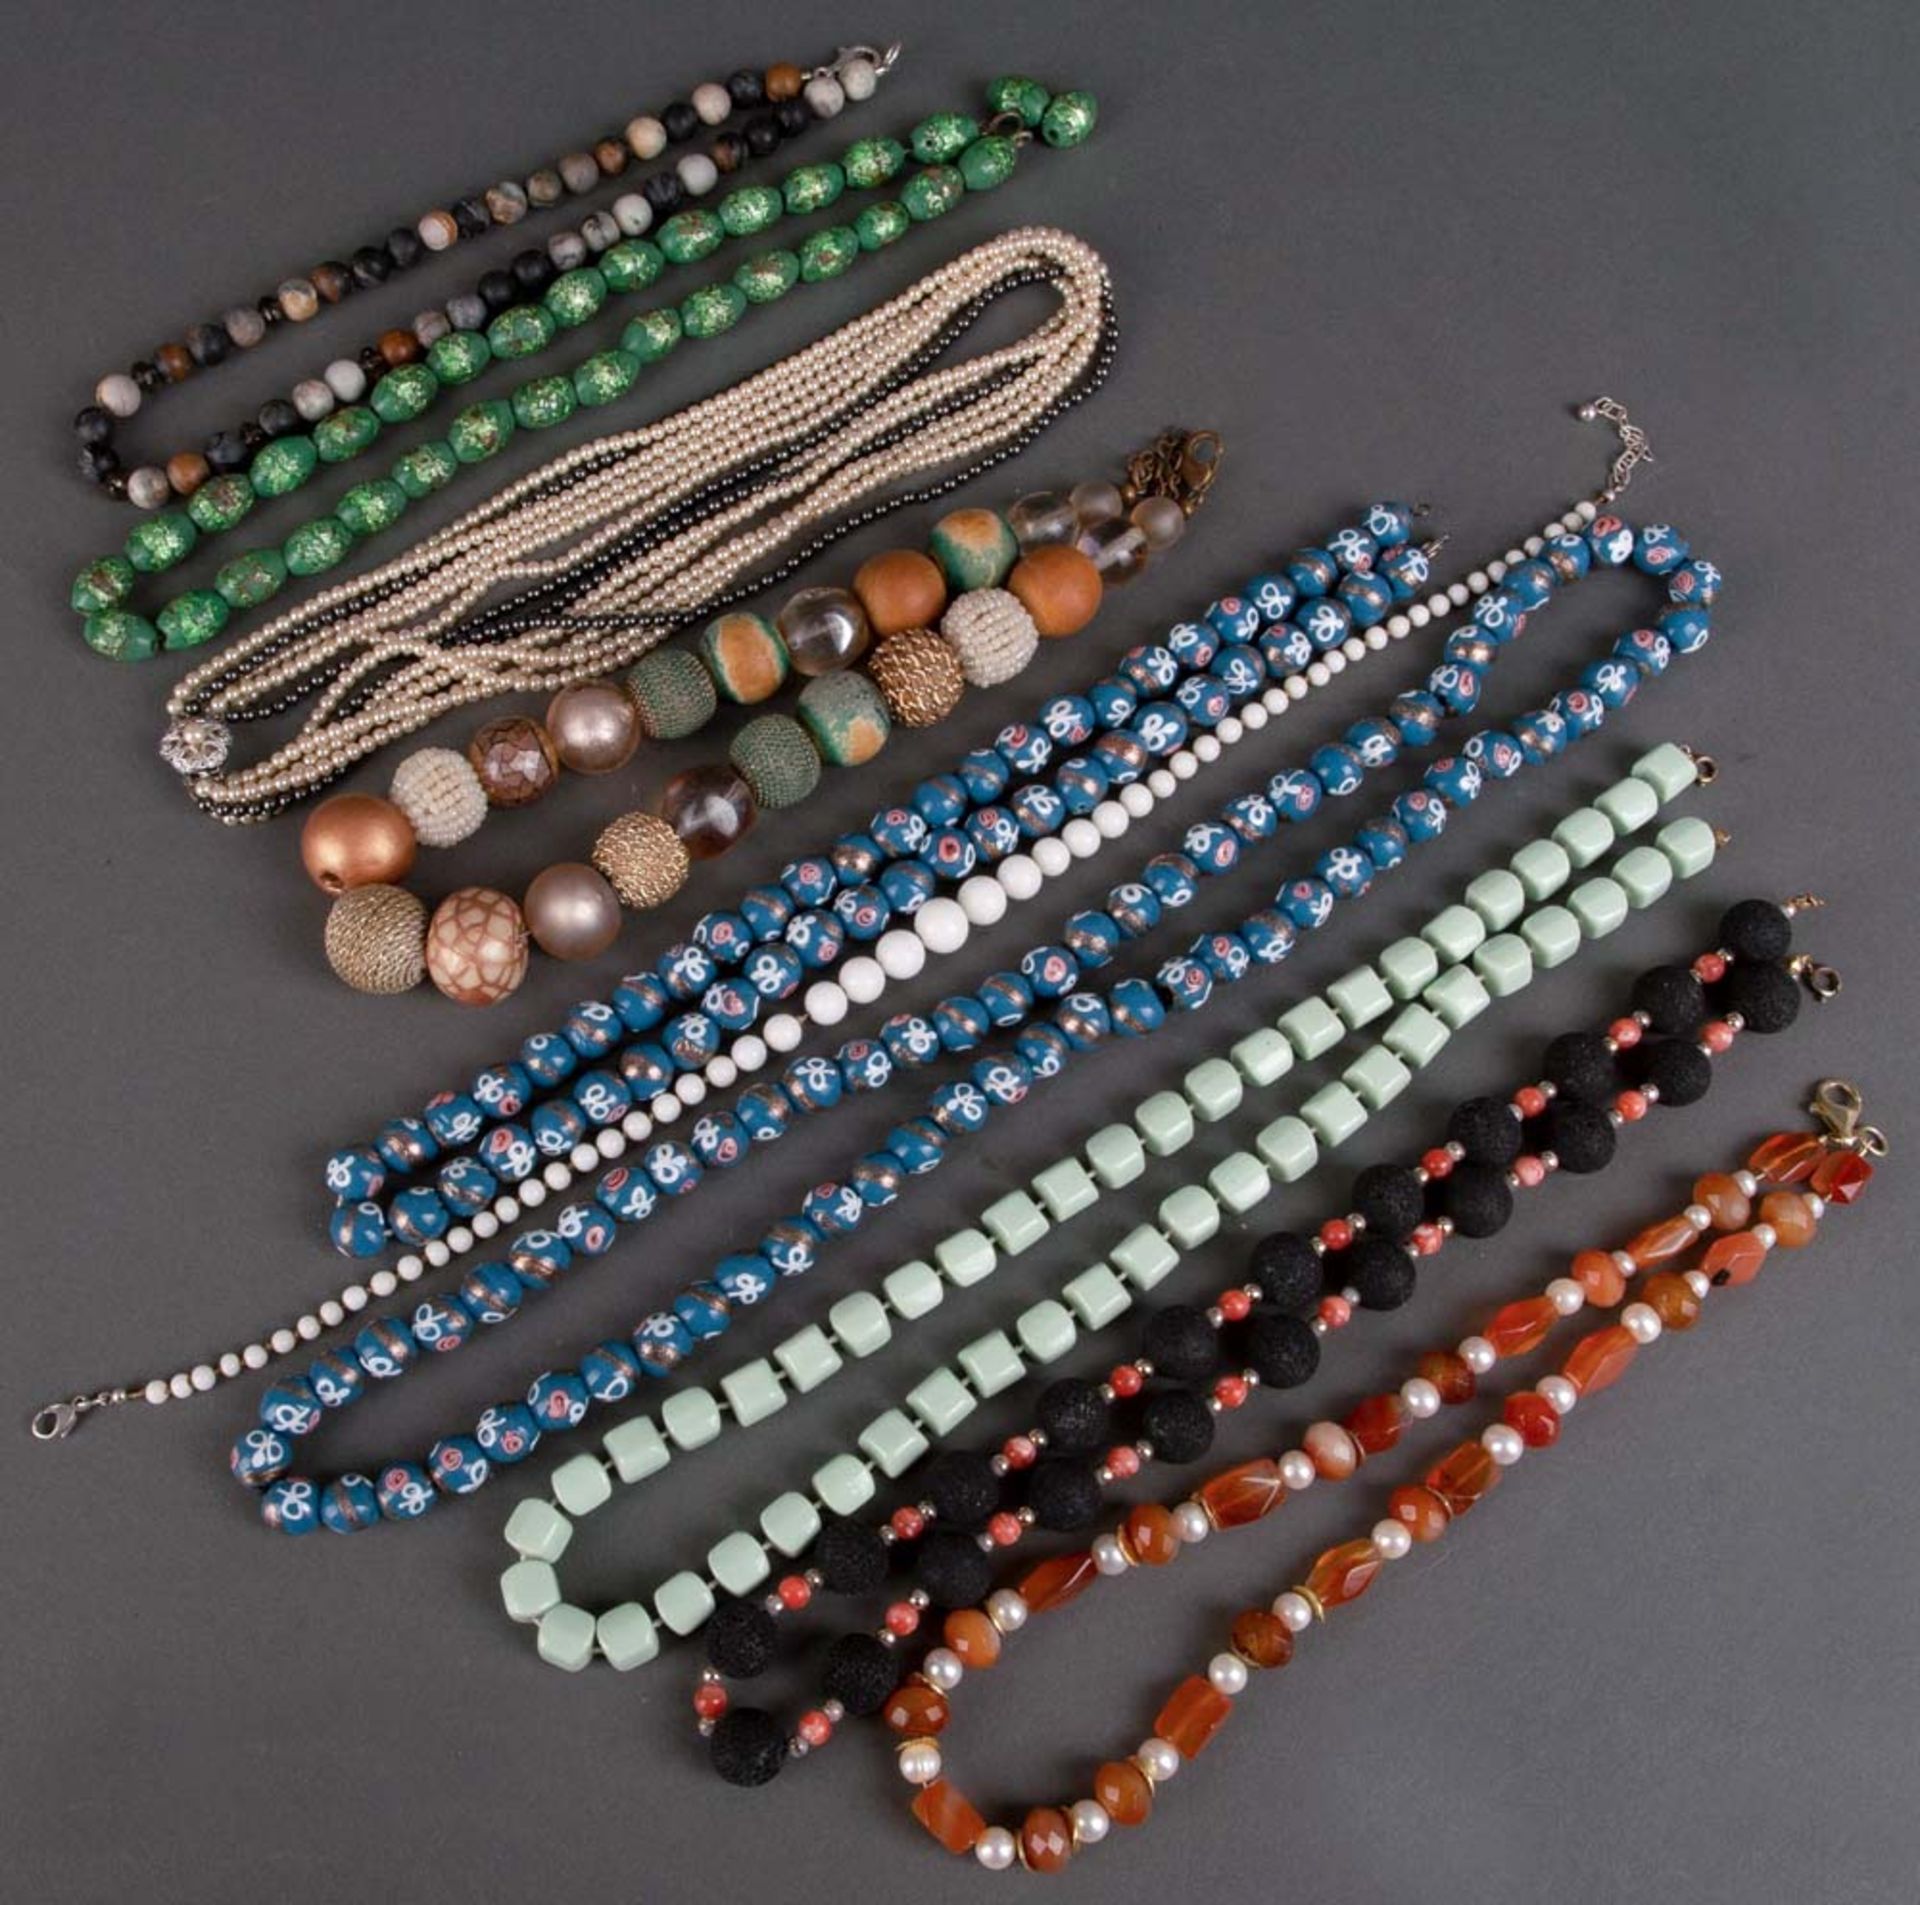 Zehn Modeschmuck-Halsketten, u.a. mit bernstein-, jade-, perlen- und quarzfarbigen Gliedern.